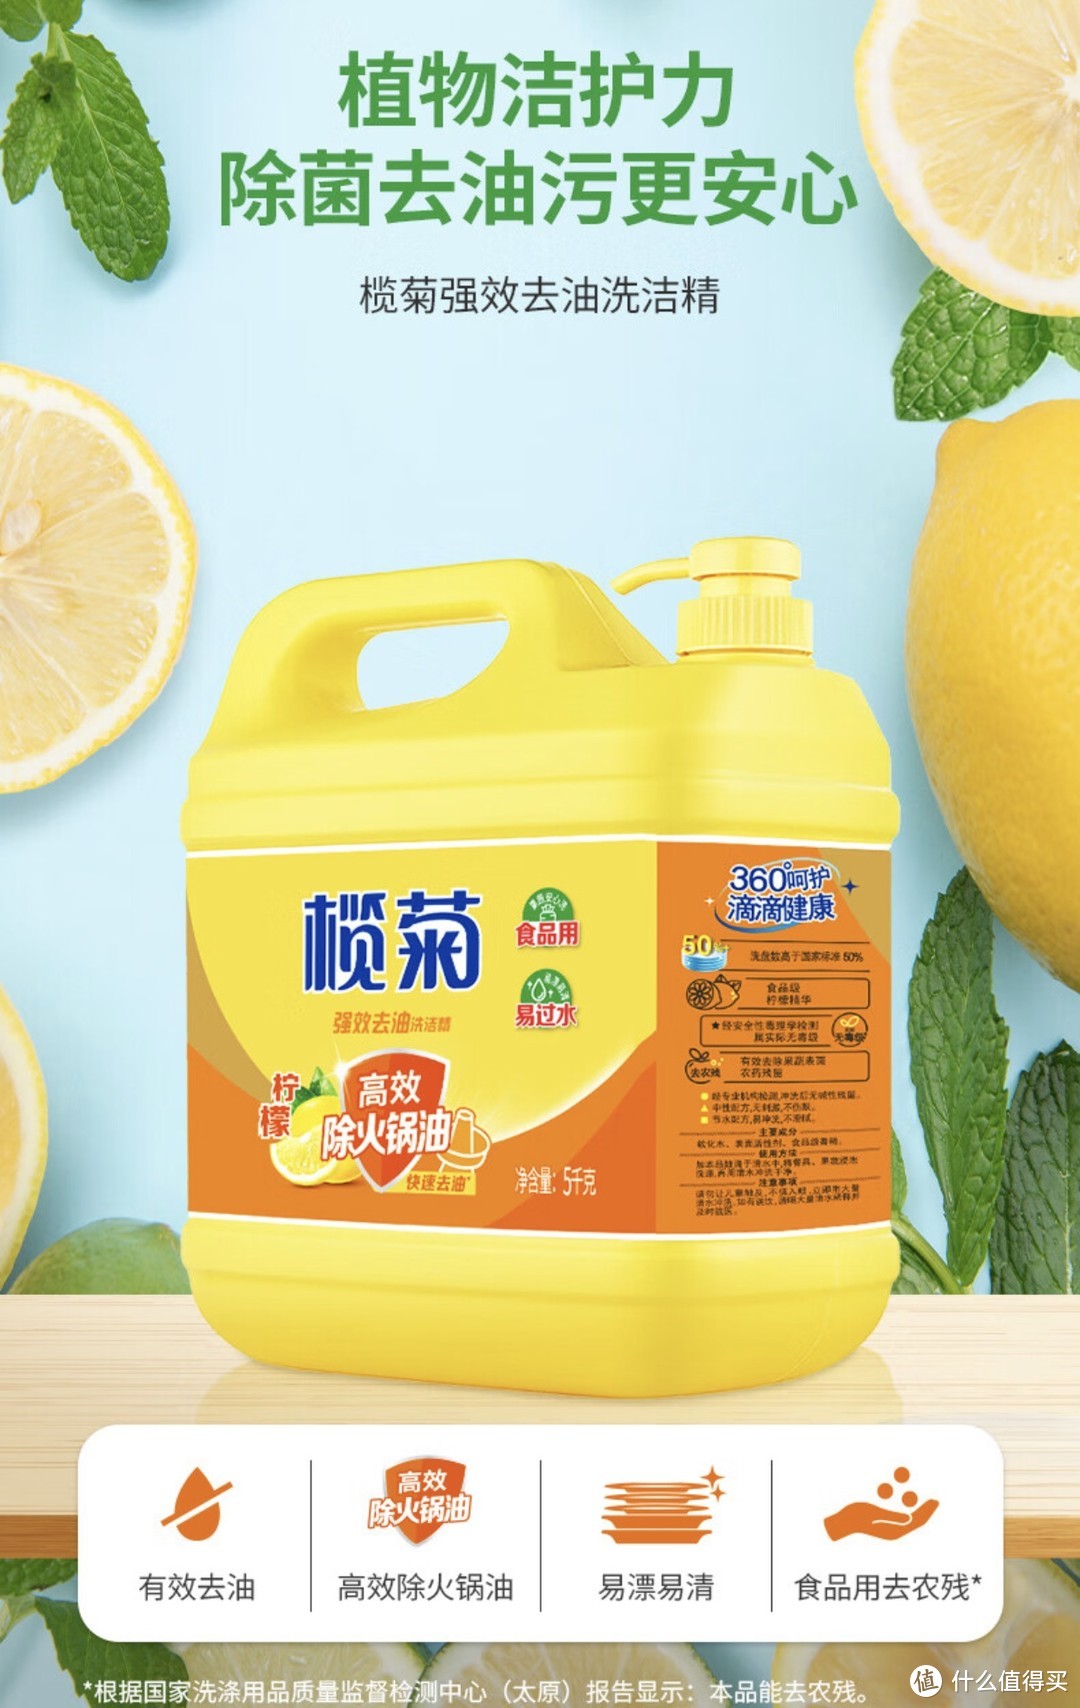 ￼￼超值好货：榄菊 洗洁精大桶5kg 菊之语柠檬去油果蔬清洗剂